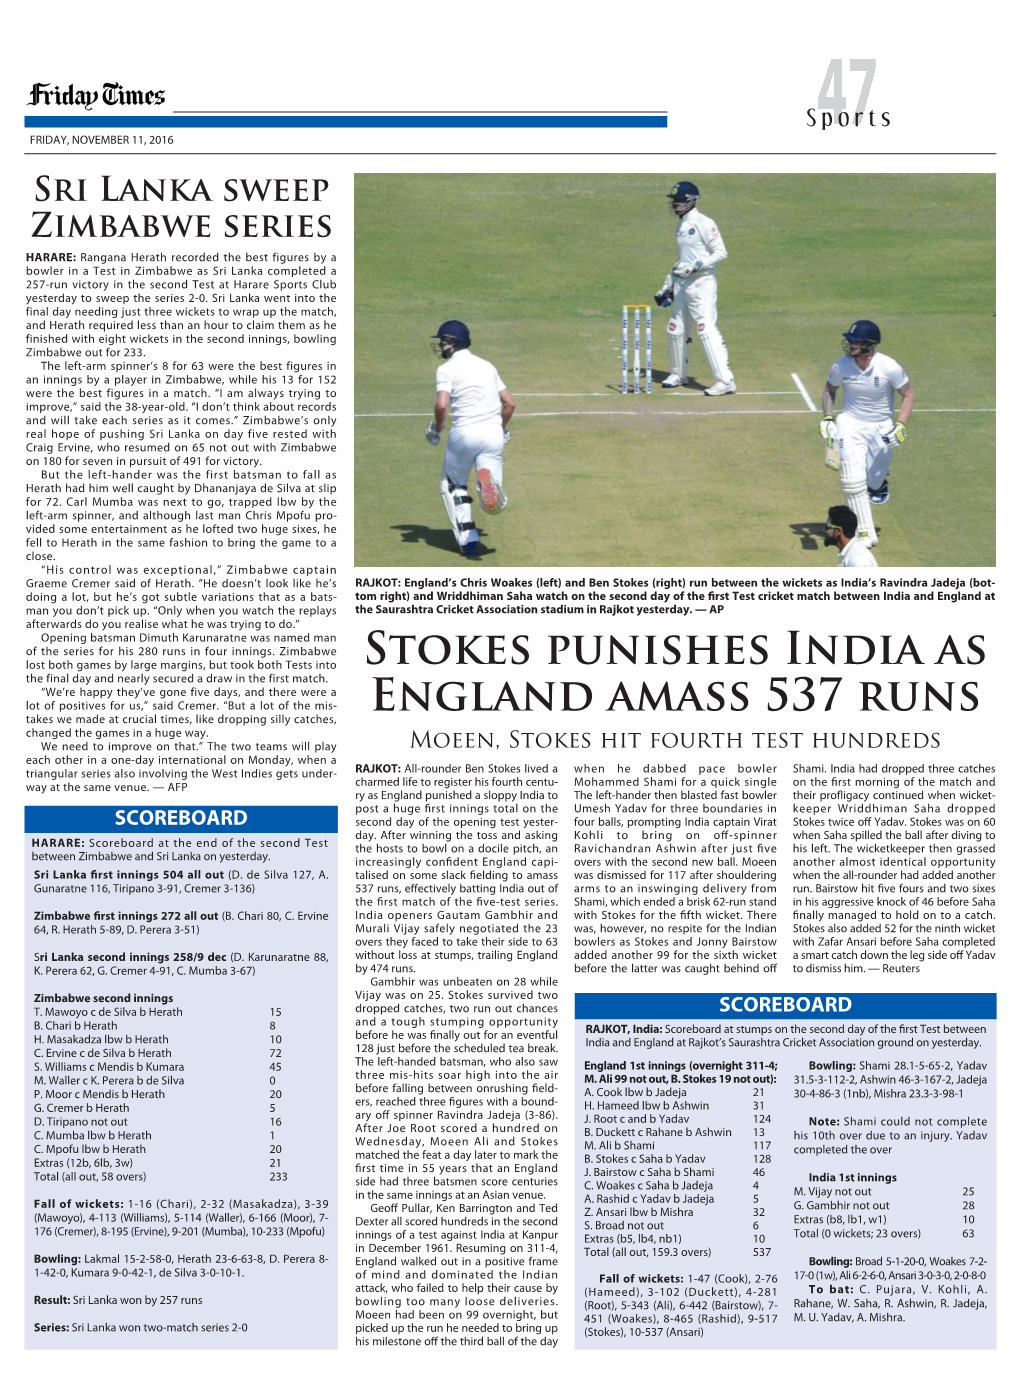 Stokes Punishes India AS England AMASS 537 RUNS